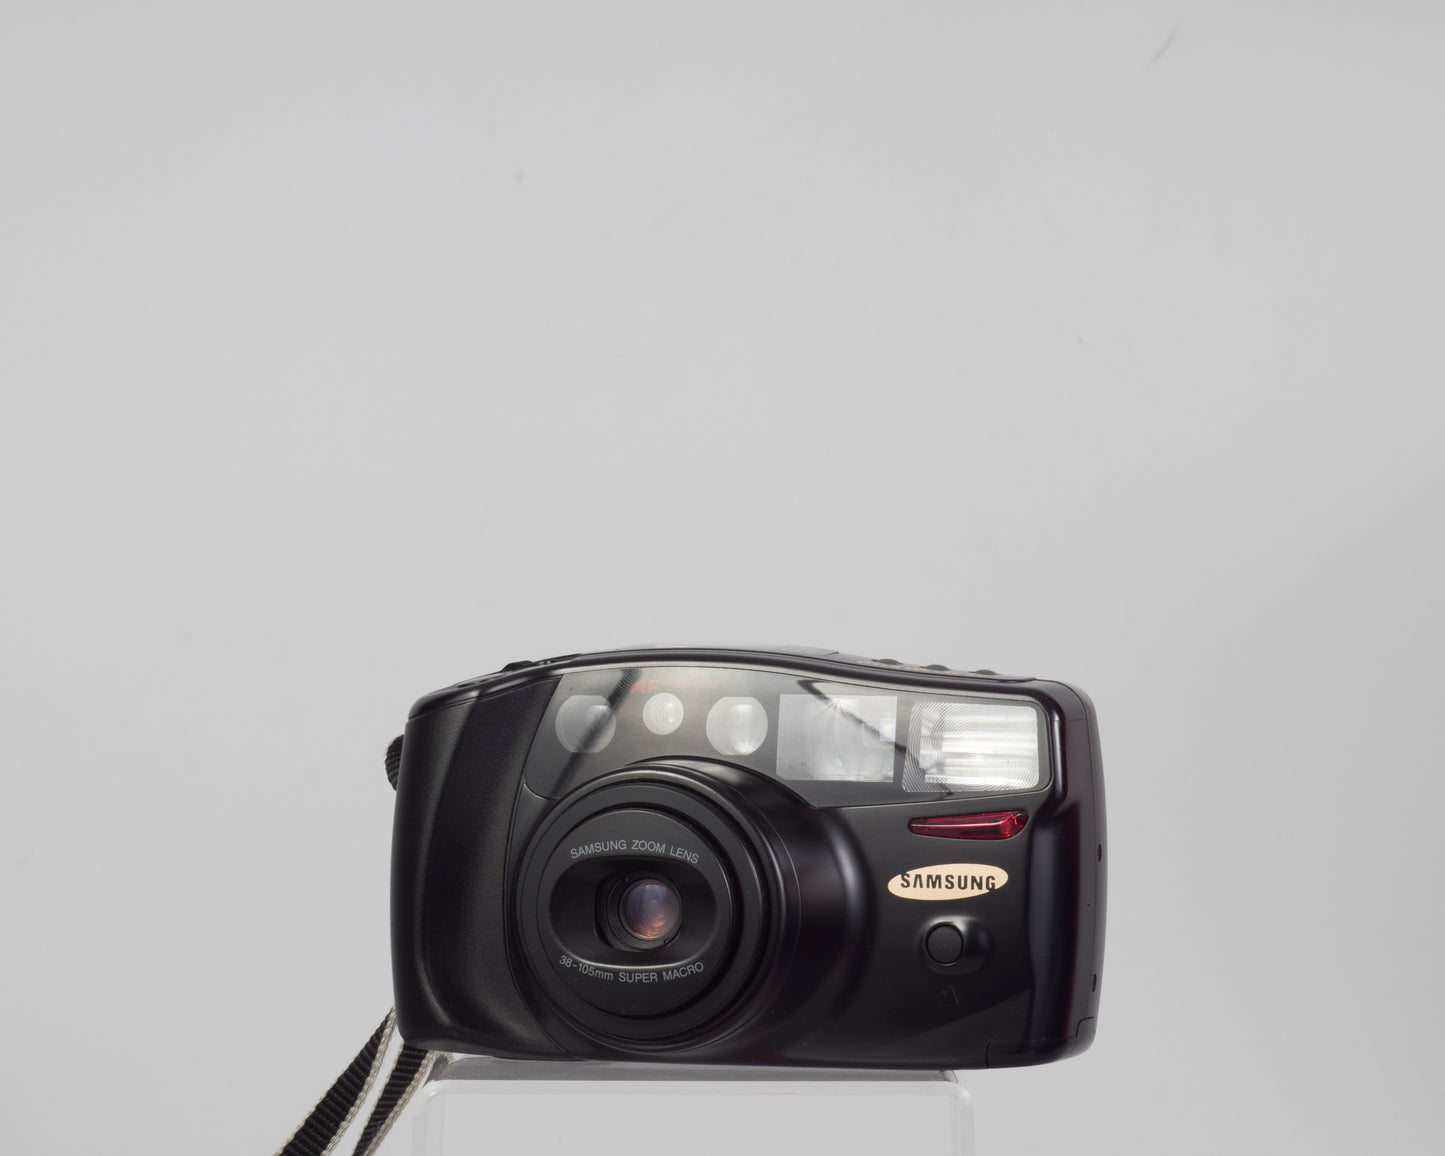 Samsung AF Zoom 1050 with case (serial 96100387)